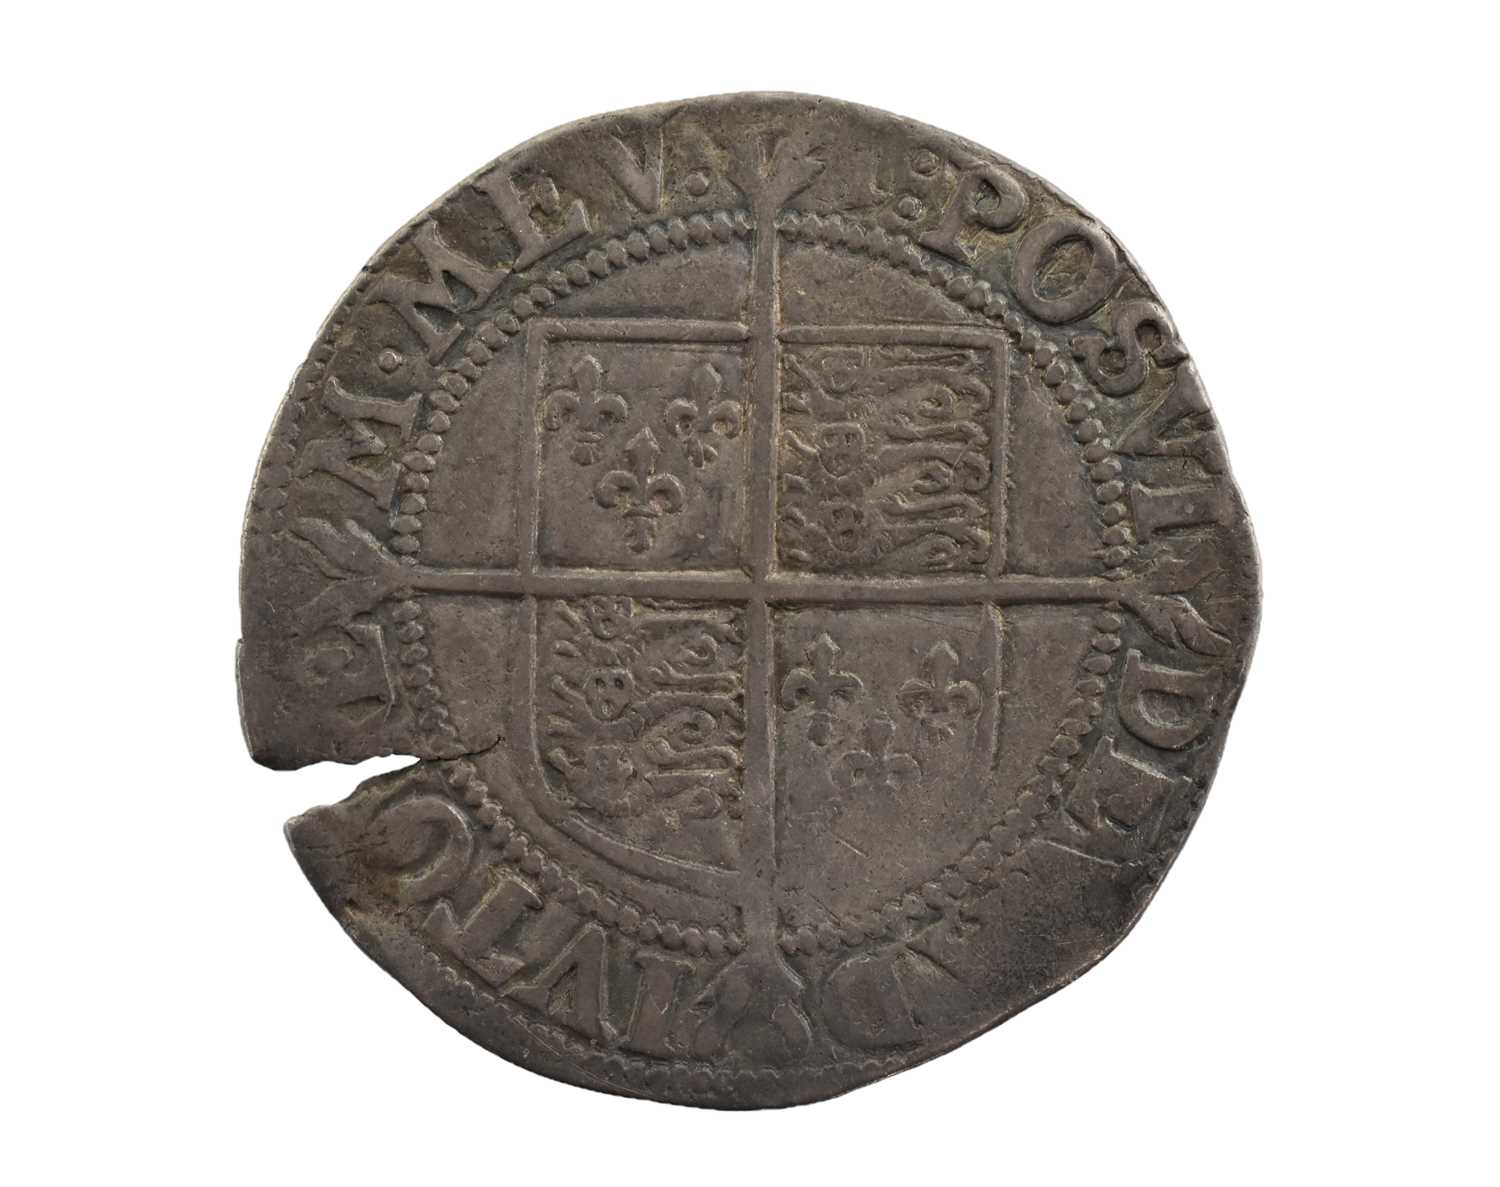 Elizabeth I, Shilling 1601-2 (31mm, 5.76g), seventh issue 1601-2, mm 1, obv. crowned bust left, rev. - Image 2 of 2